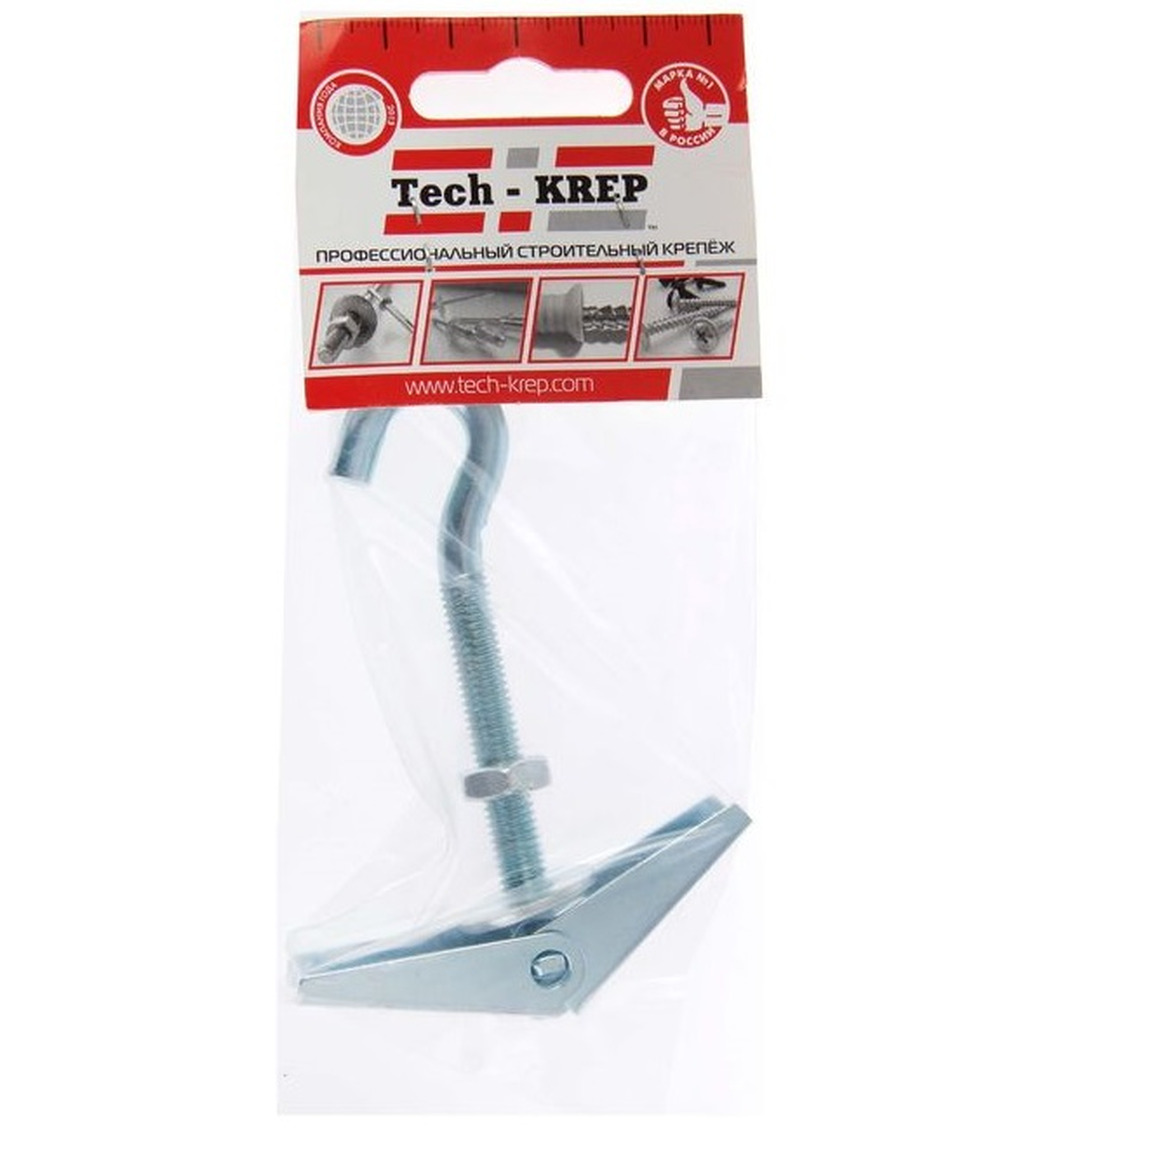 Анкер складной пружинный с крюком М8 1 шт - пакет Tech-Krep 103901 анкер тундра потолочный складной пружинный с крюком белый цинк м4